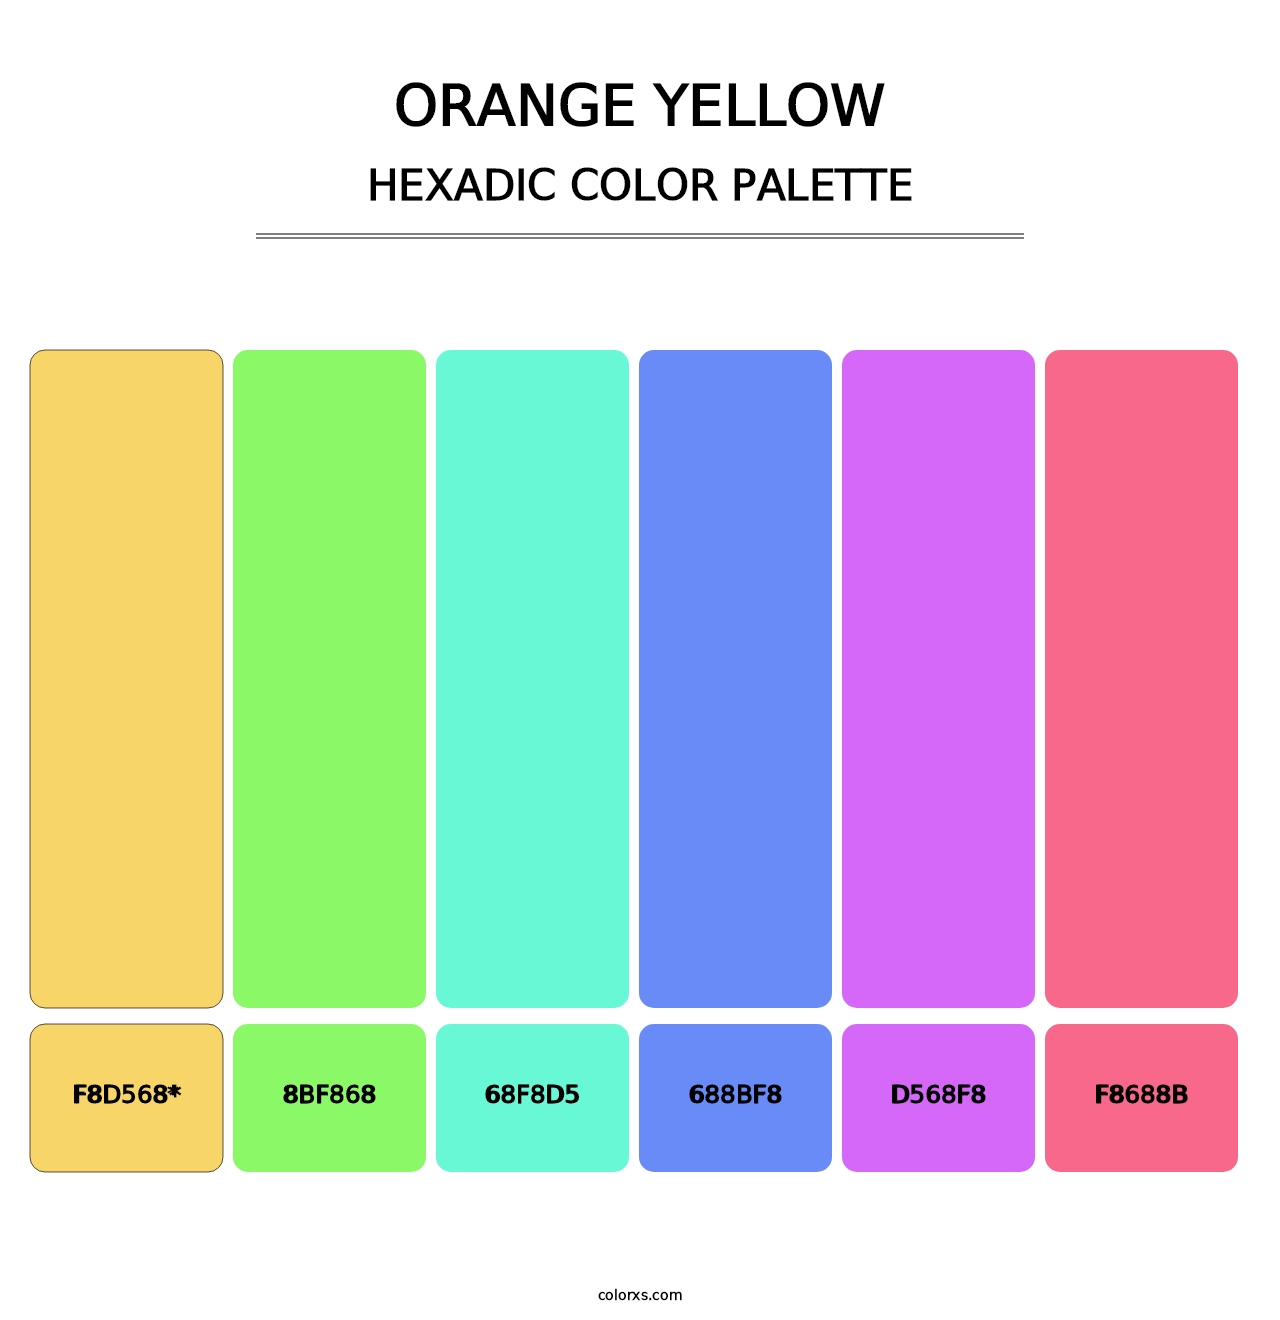 Orange Yellow - Hexadic Color Palette